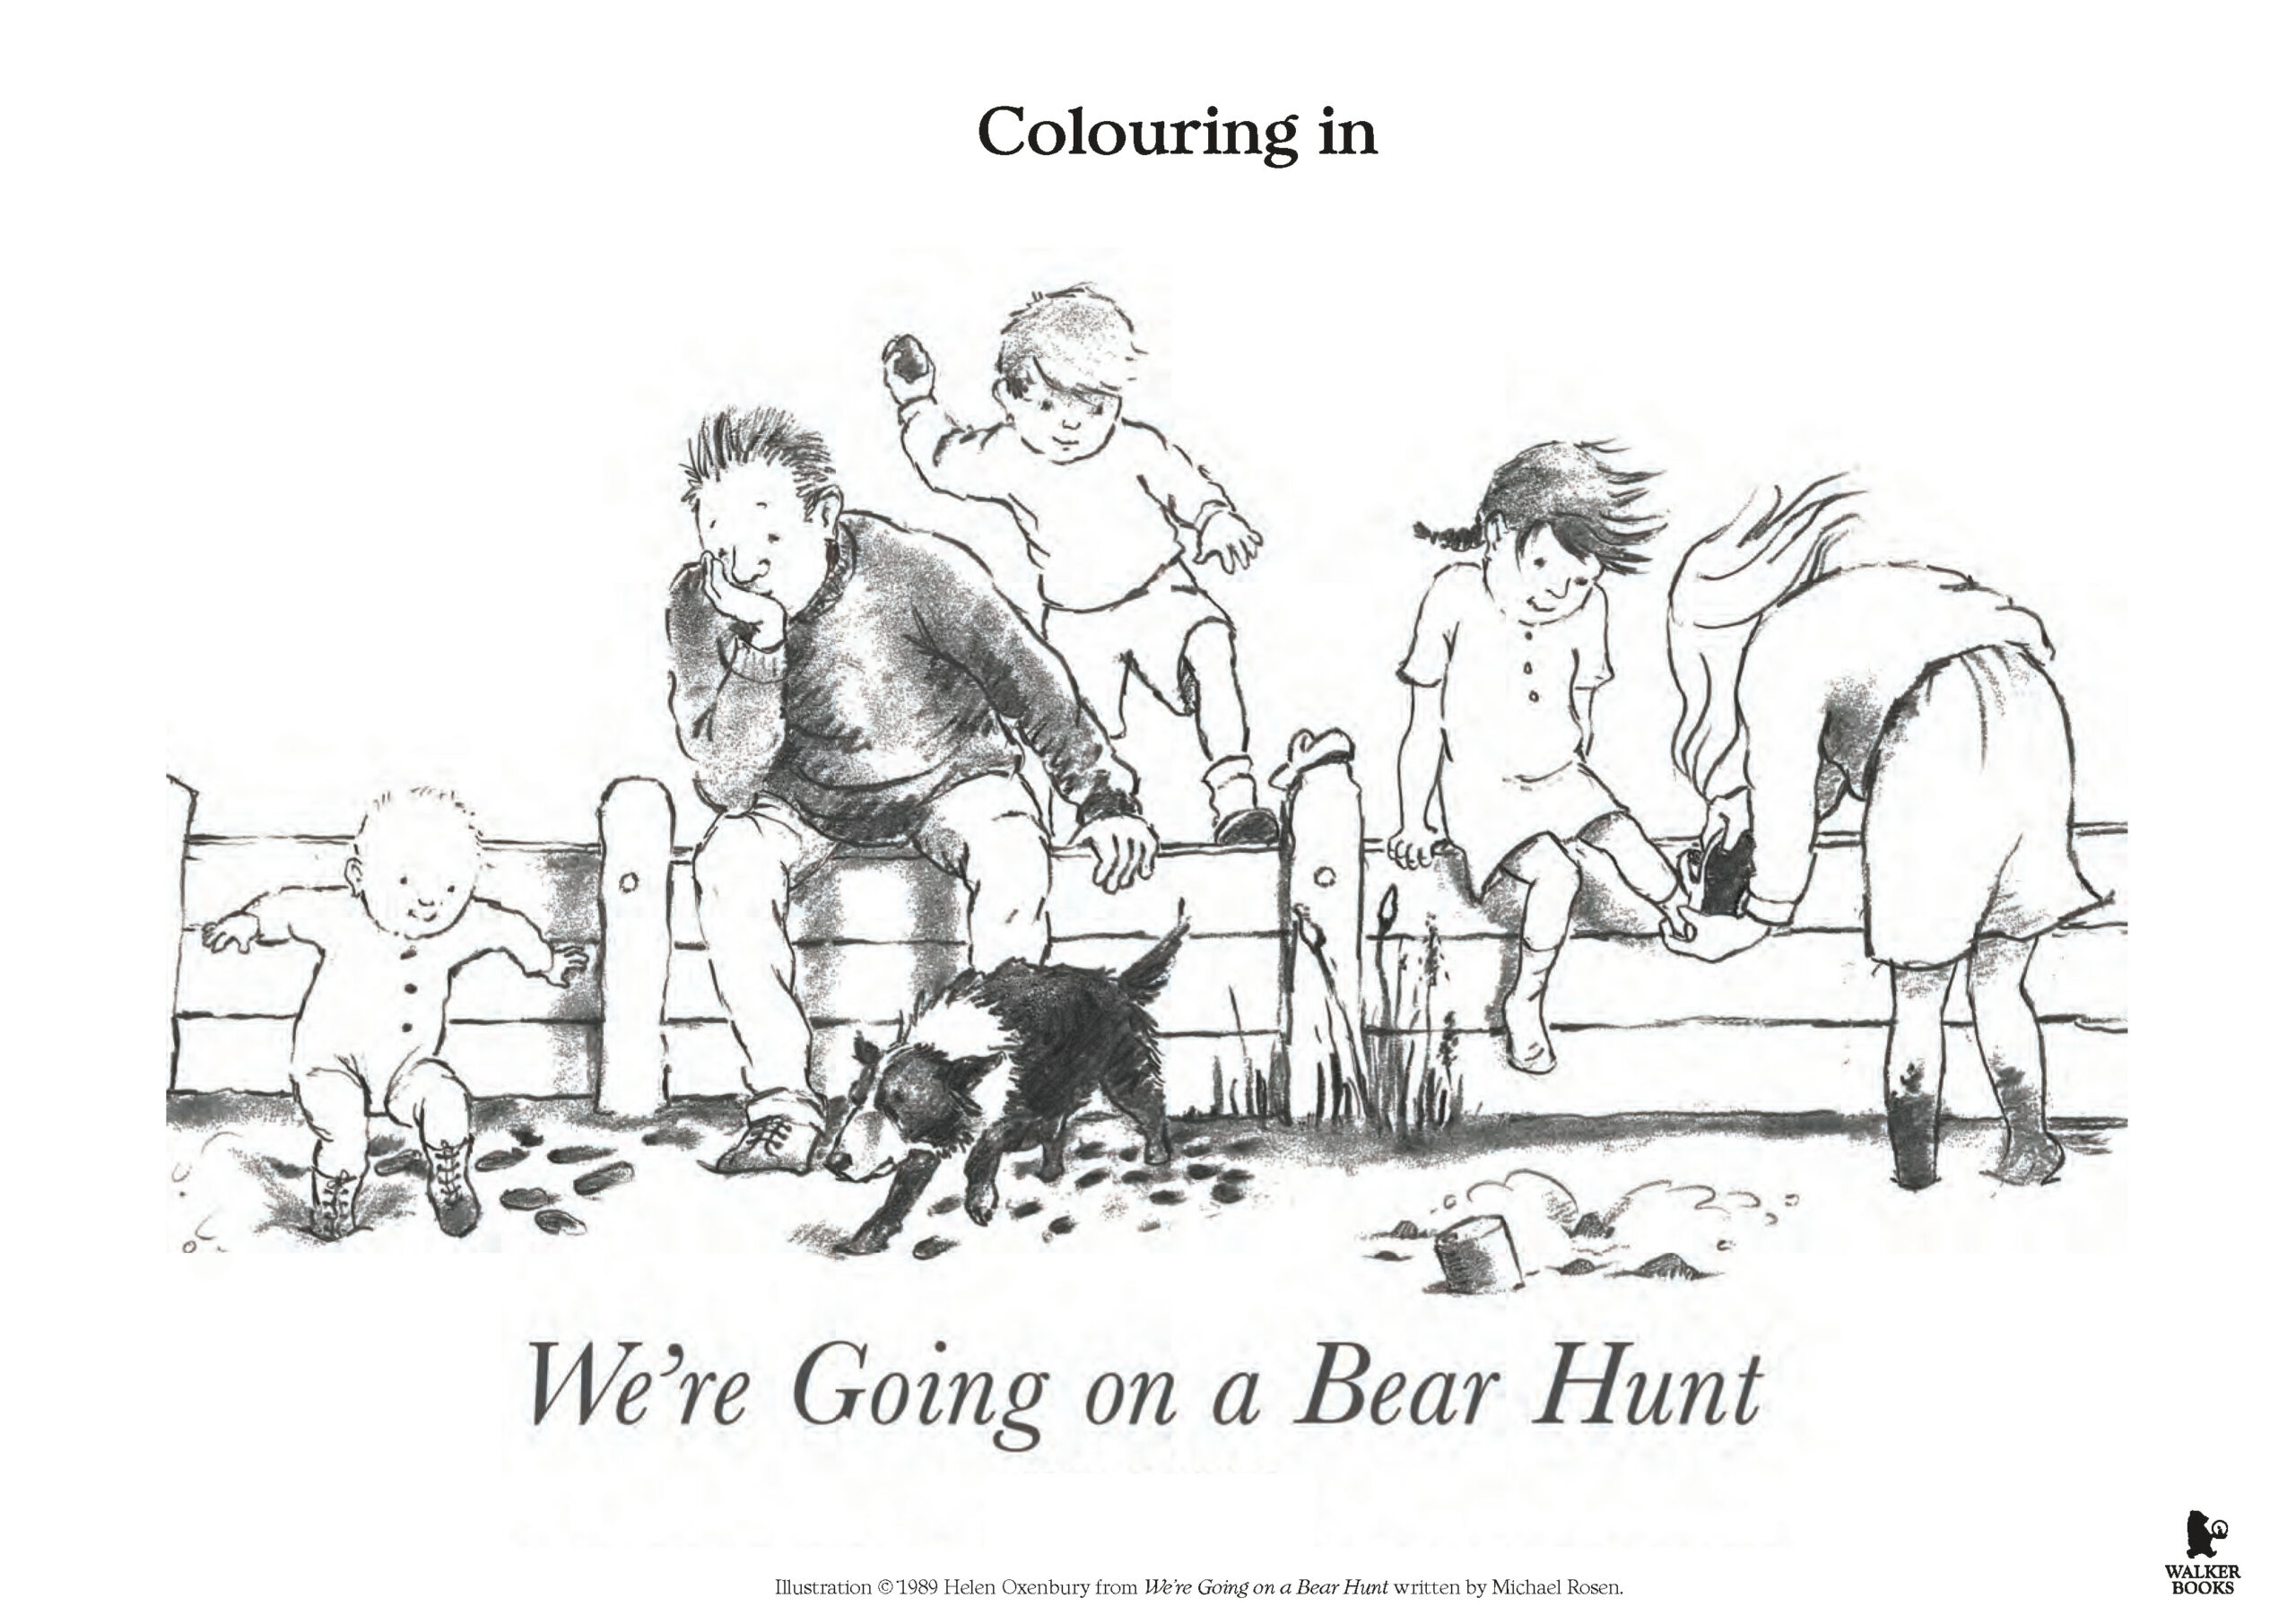 we-re-going-on-a-bear-hunt-activity-kit-2-walker-books-australia